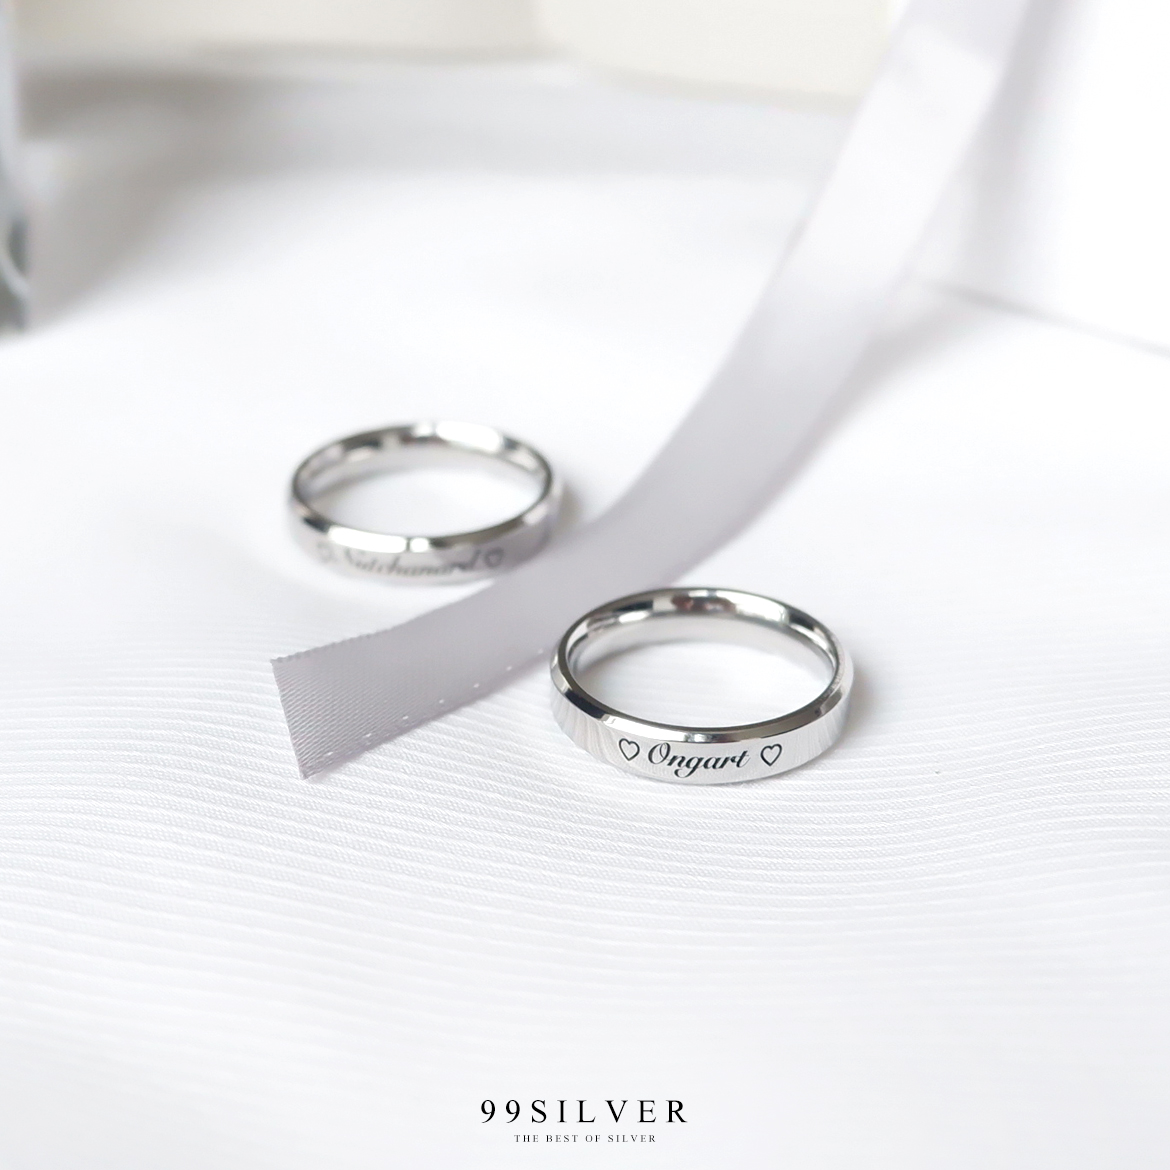 แหวนสแตนเลสแท้หน้ากว้าง 4 มิลลิเมตร ขอบลดมุมตัดสวยงาม ตัวเรือนสีเงินเงา